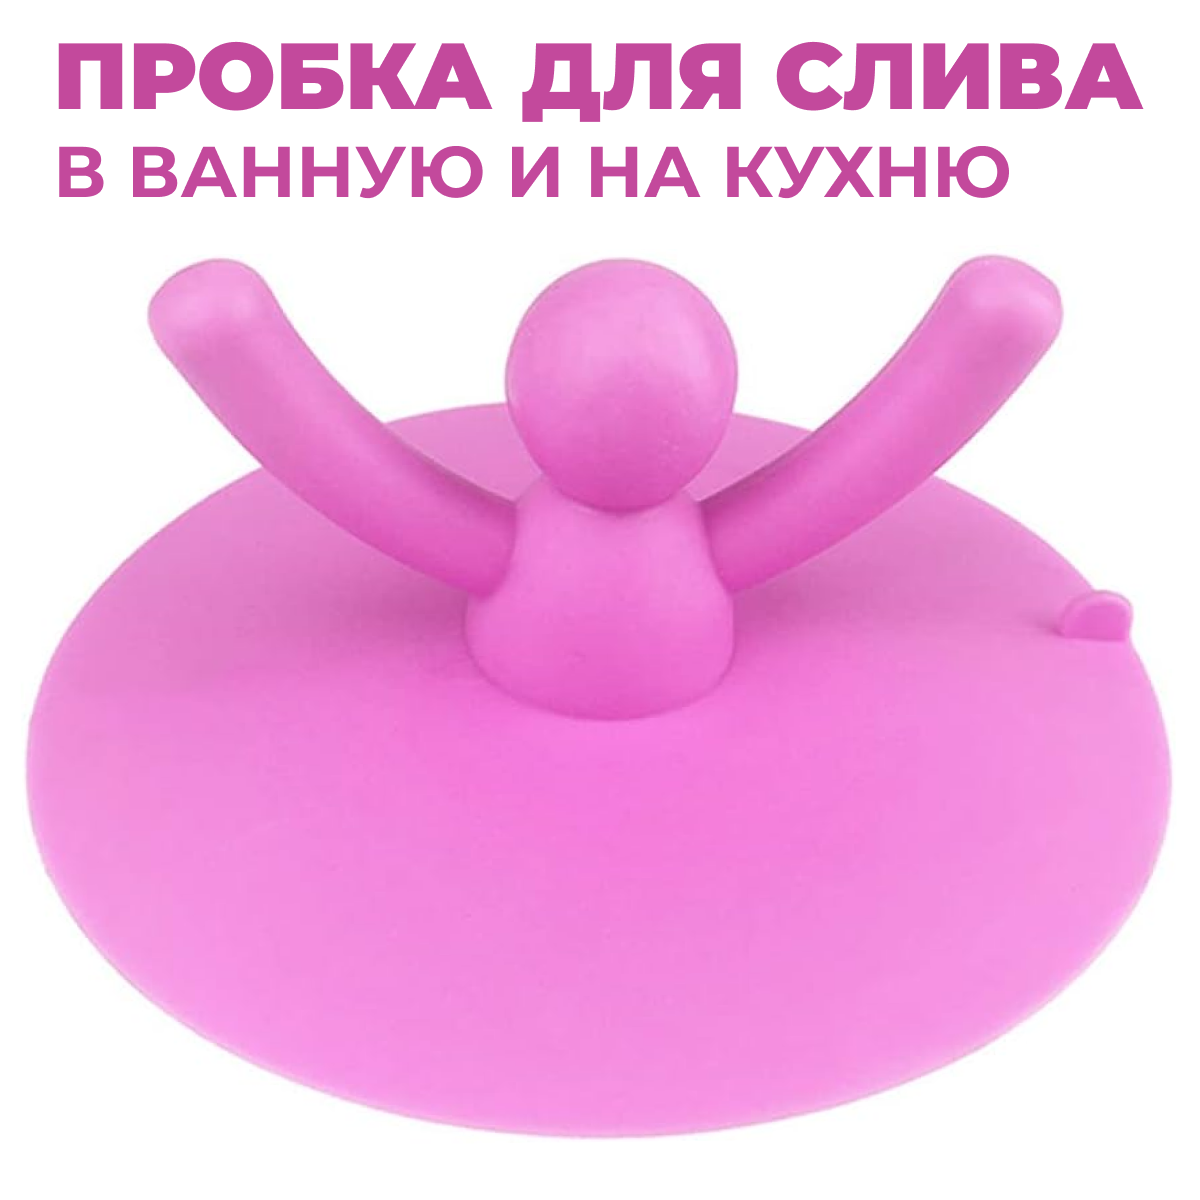 Резиновая пробка для ванны и раковины Человечек розовый Заглушка для мойки, для закупоривания сливного отверстия в ванне или раковине для дома и дачи, универсальная, резиновая